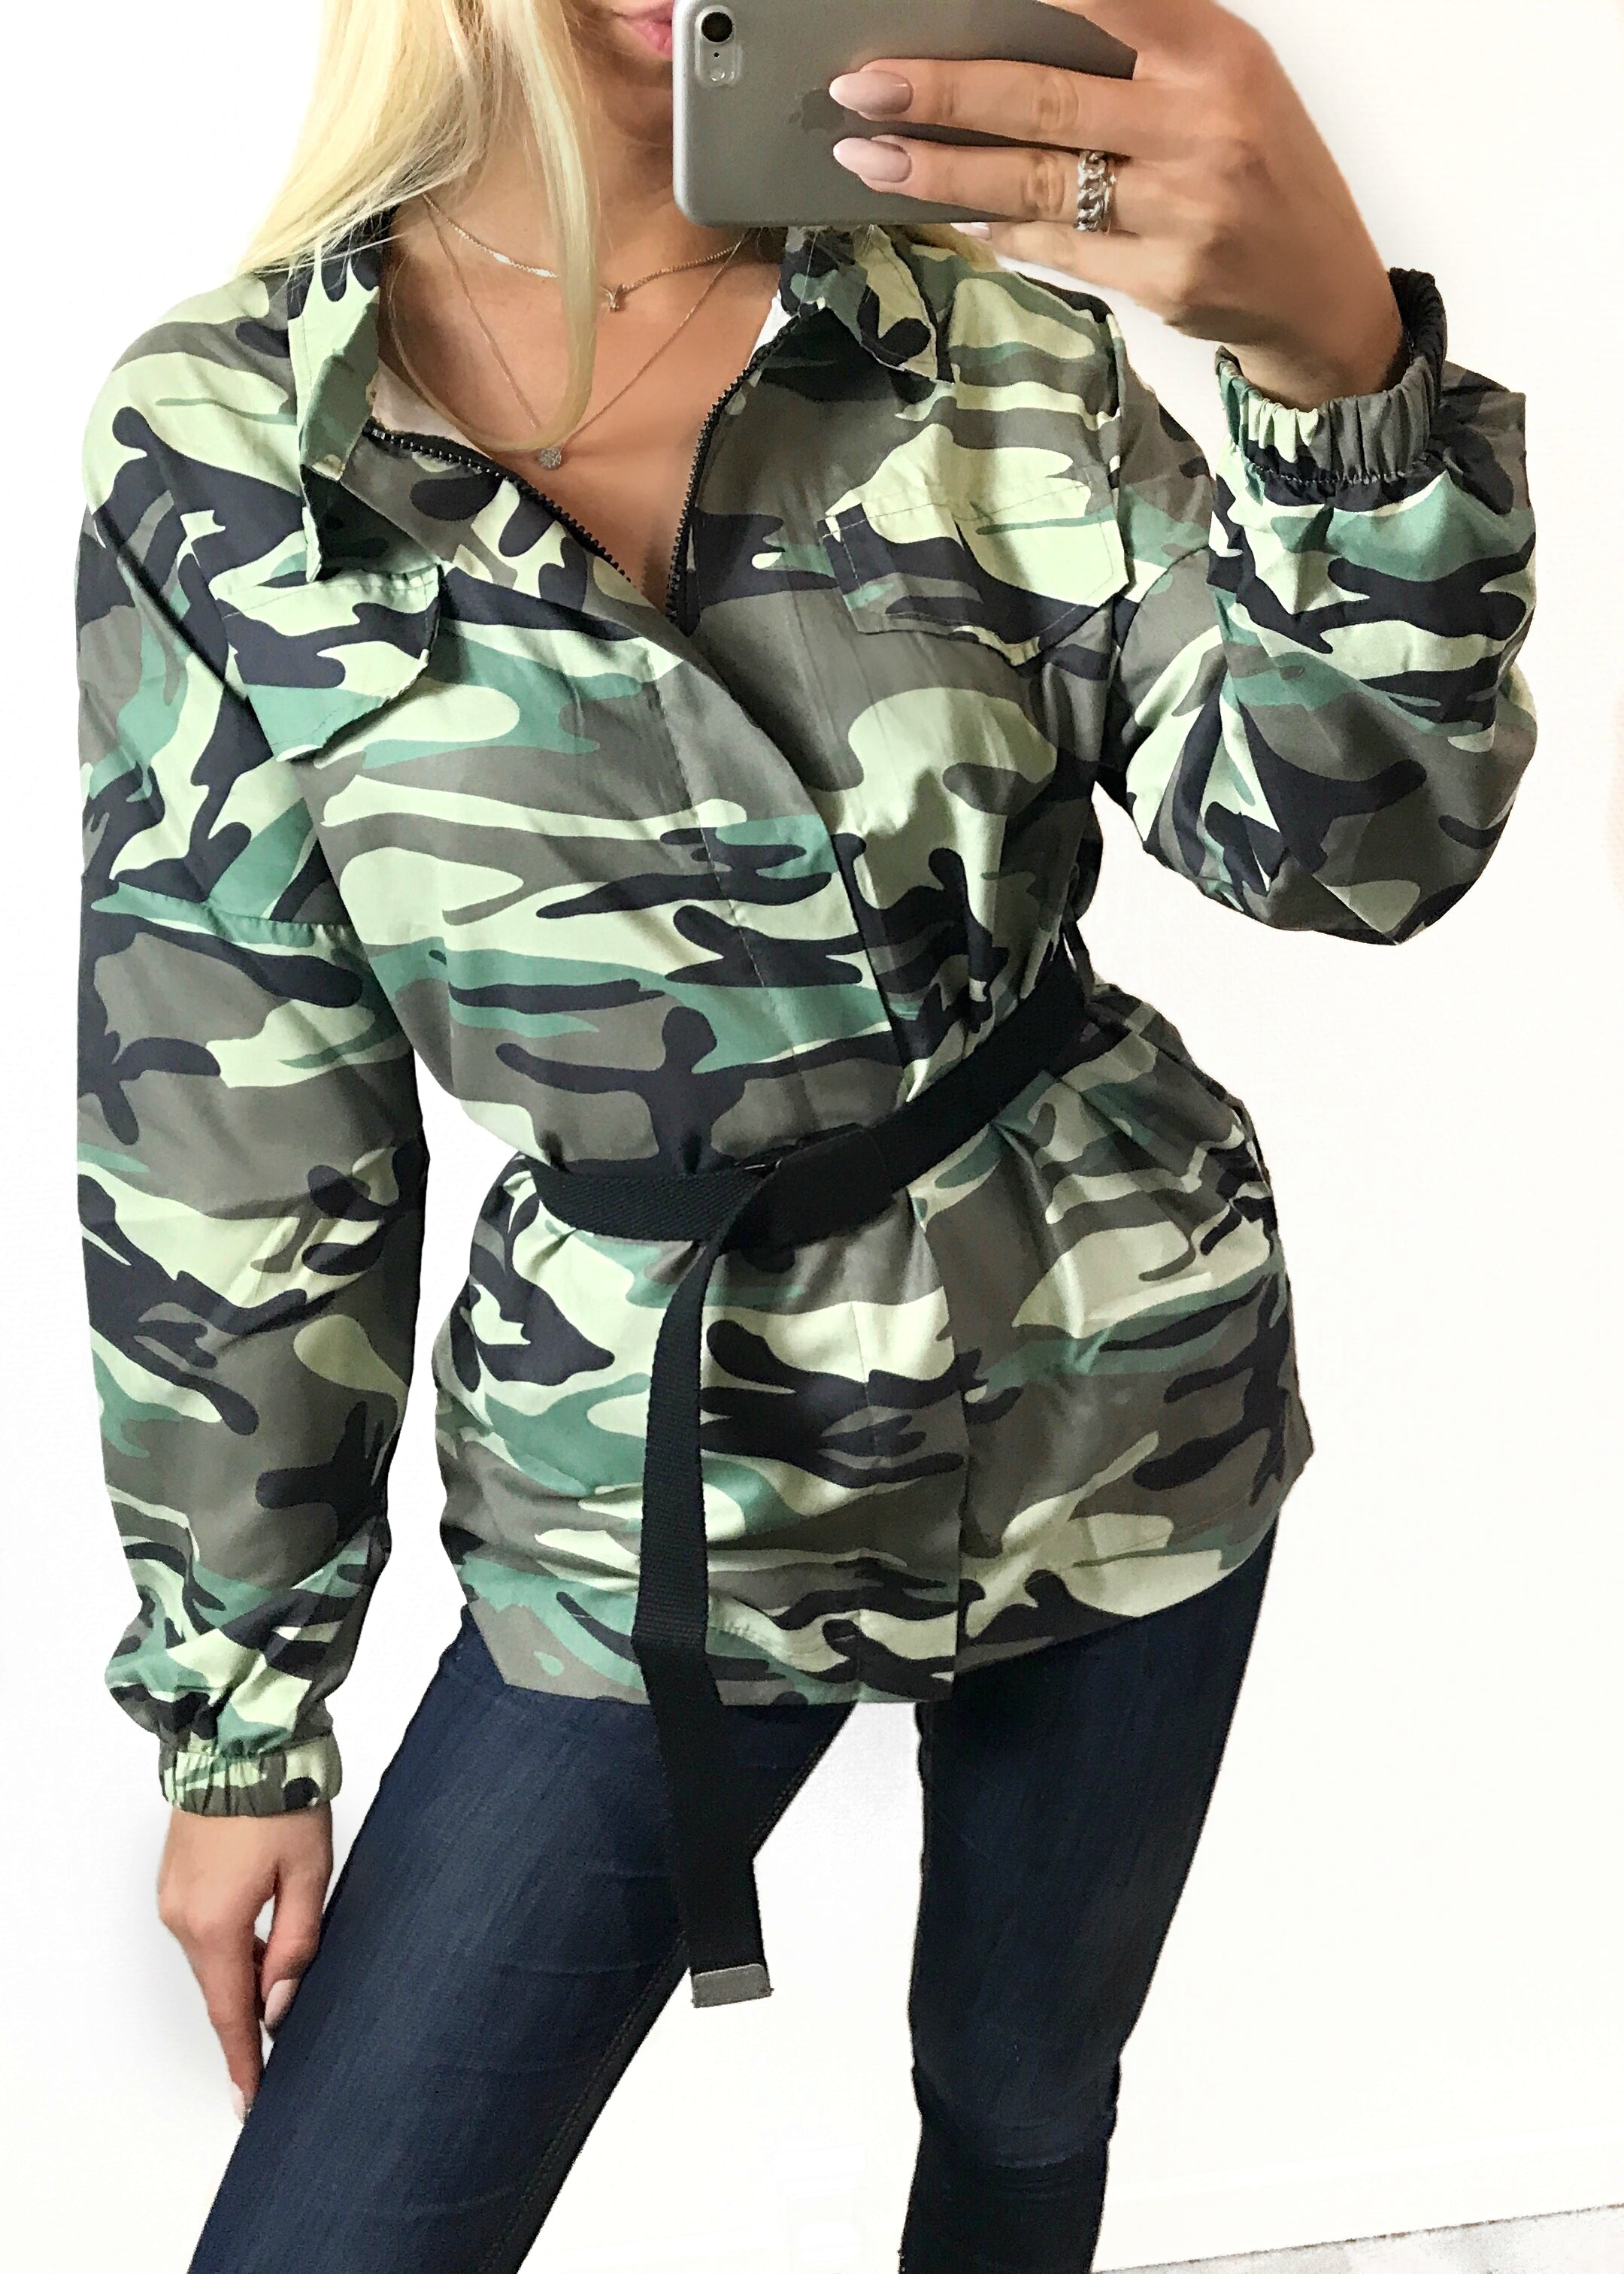 Anya militær jakke med – DressToimpress